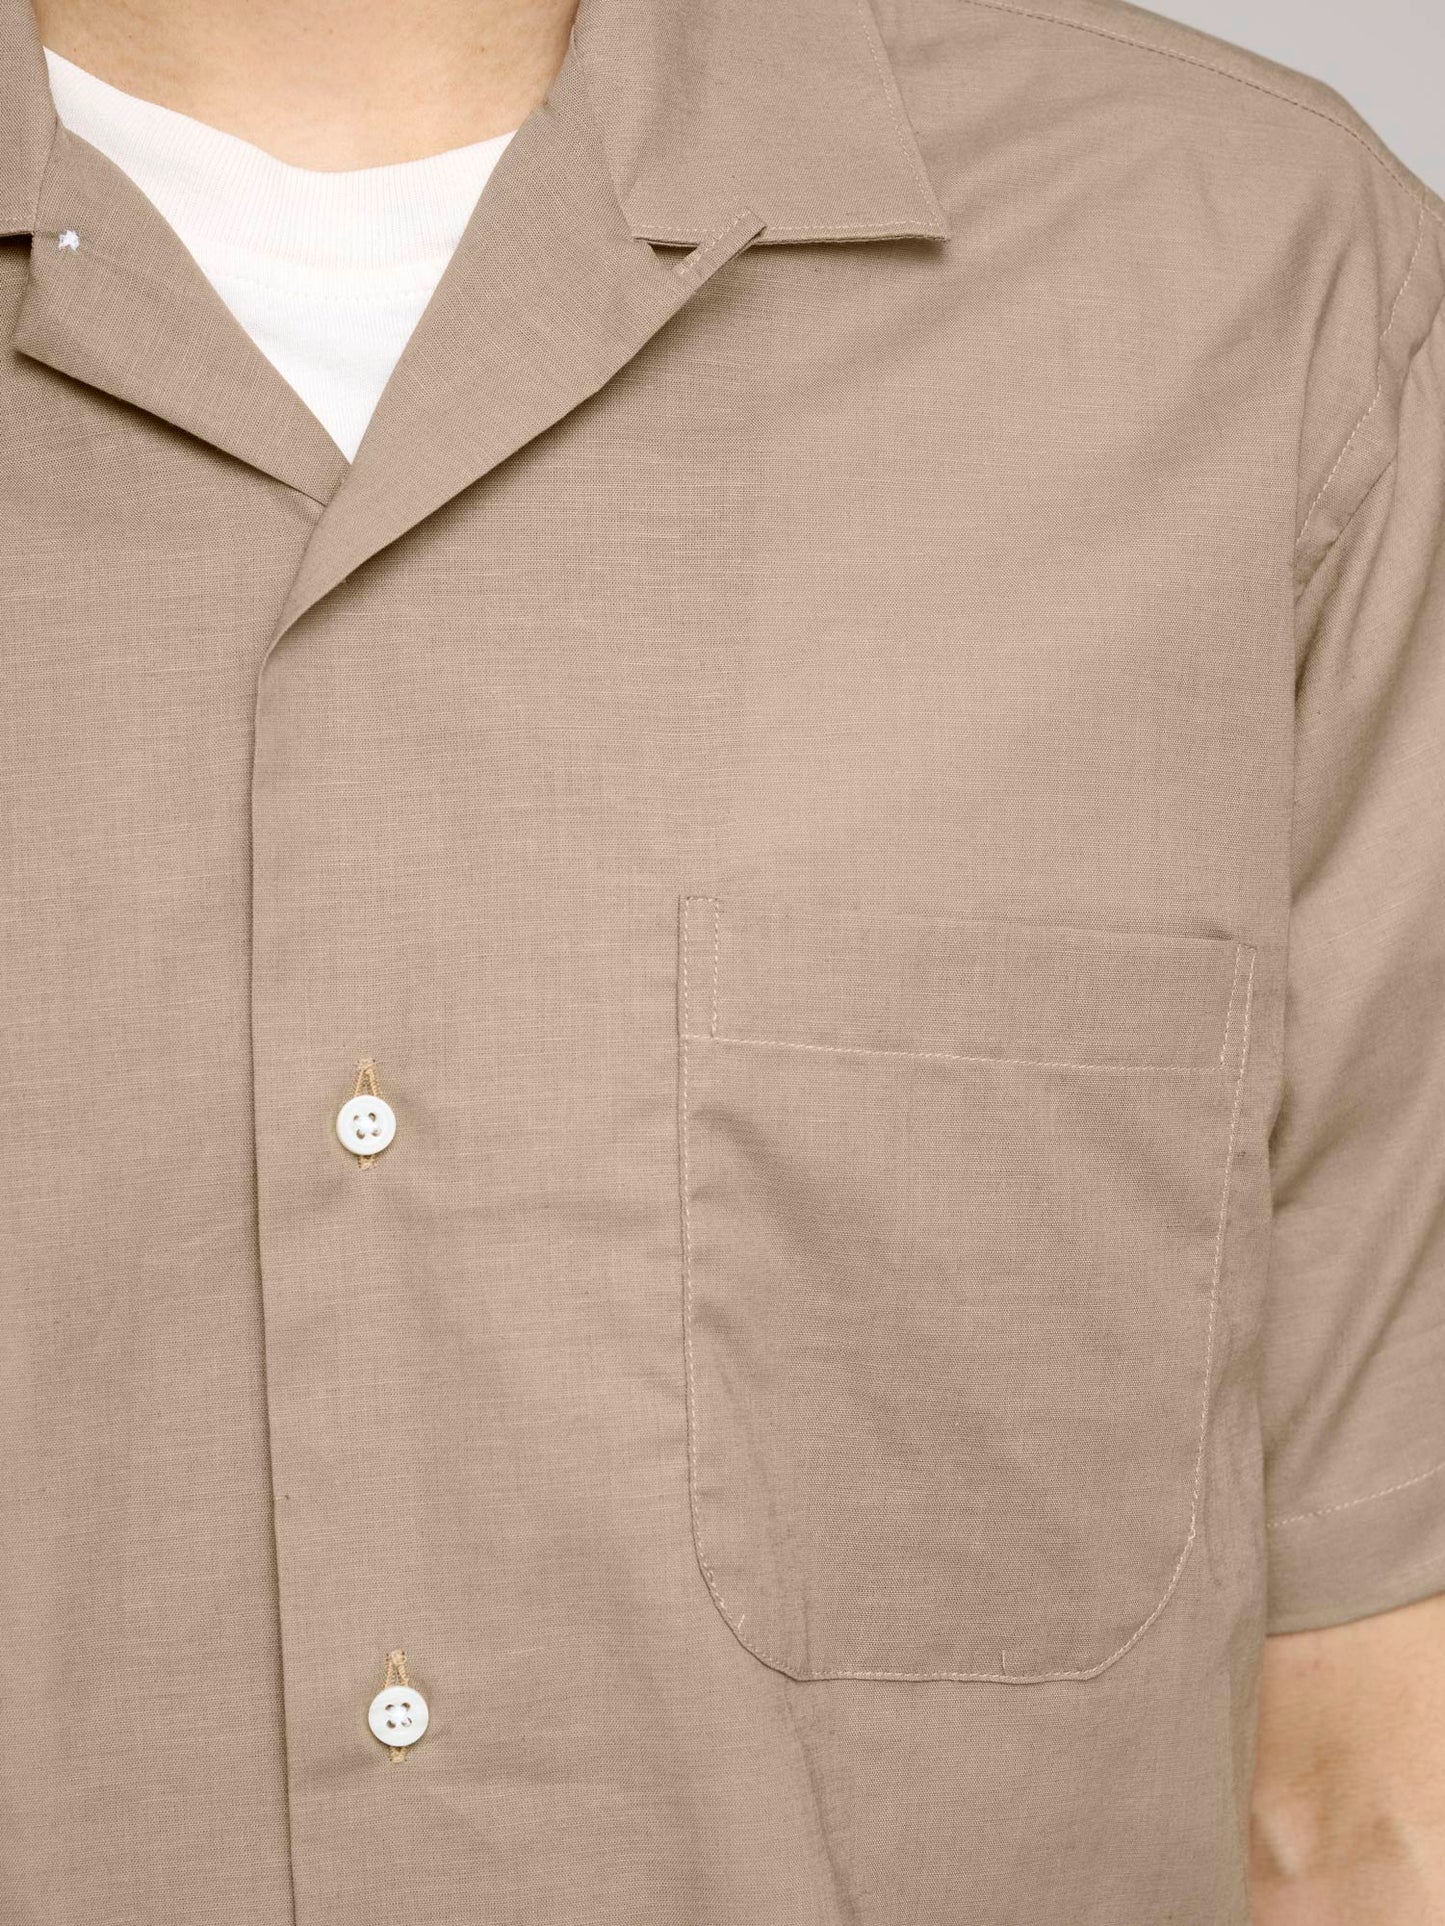 Fine Cotton Linen Voile S/S Shirt, Pale Brown